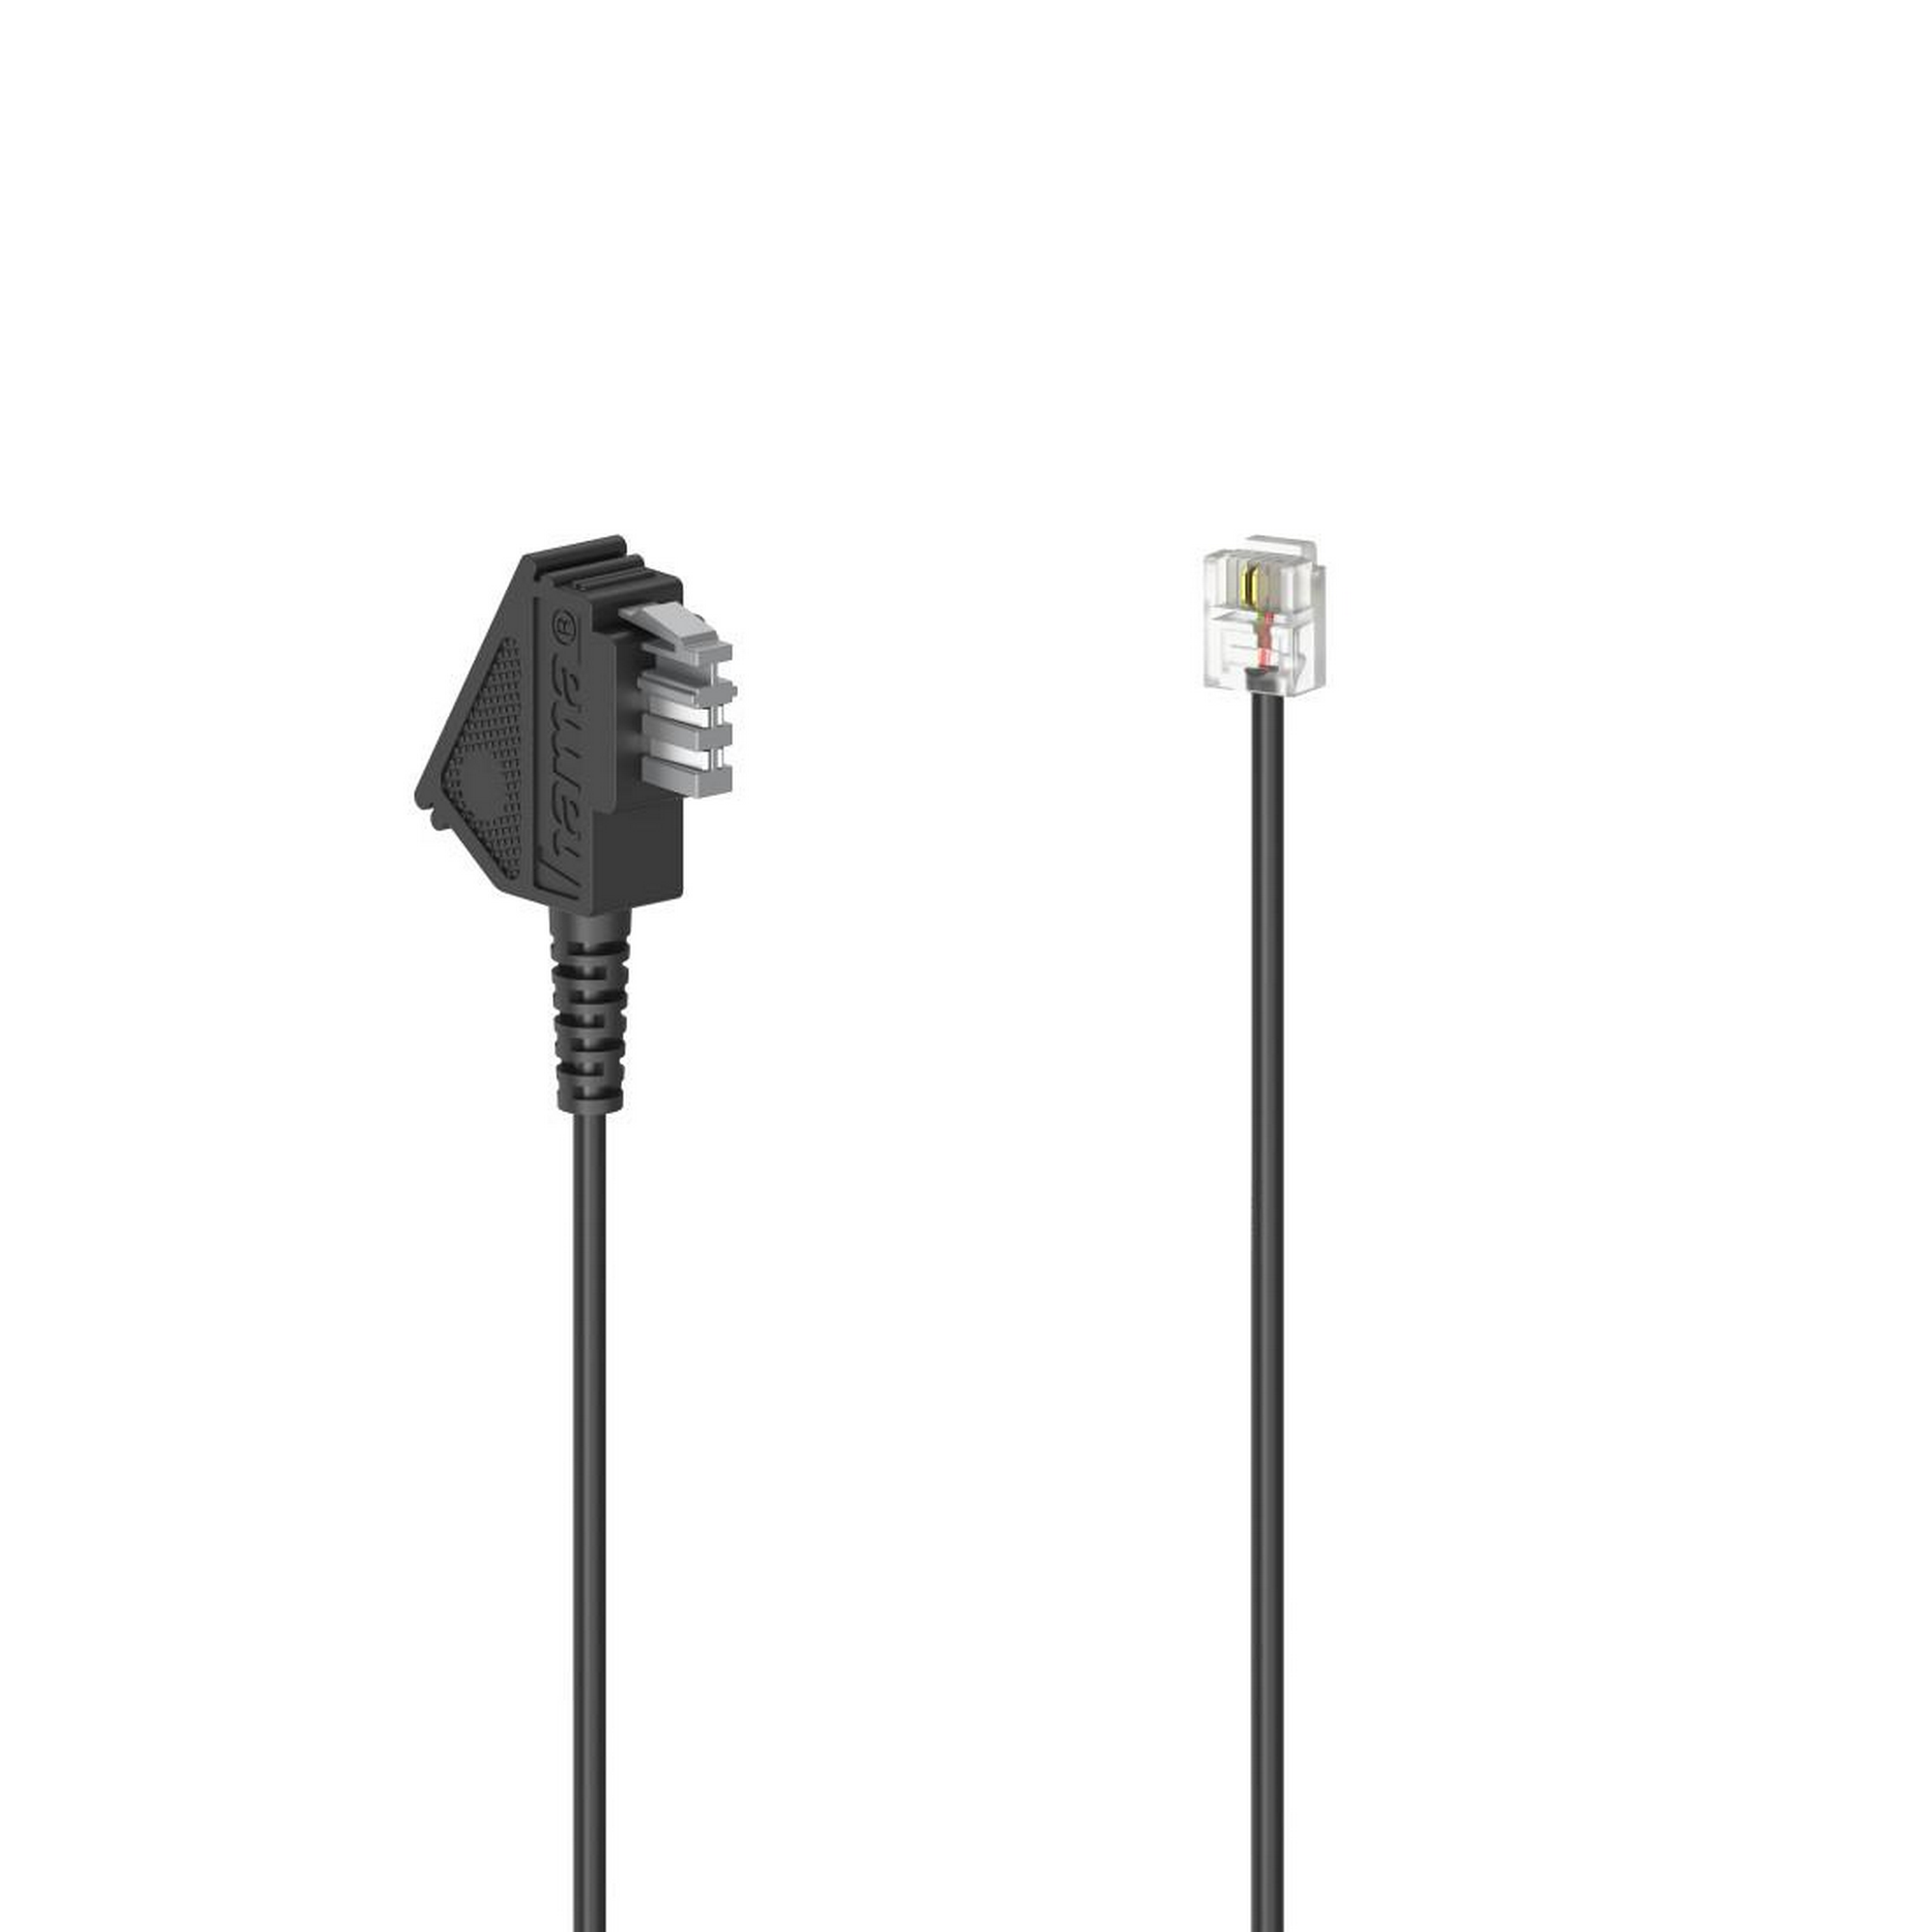 Anschlusskabel schwarz TAE-N-Stecker mit Modular-Stecker 6p2c, 10 m + product picture